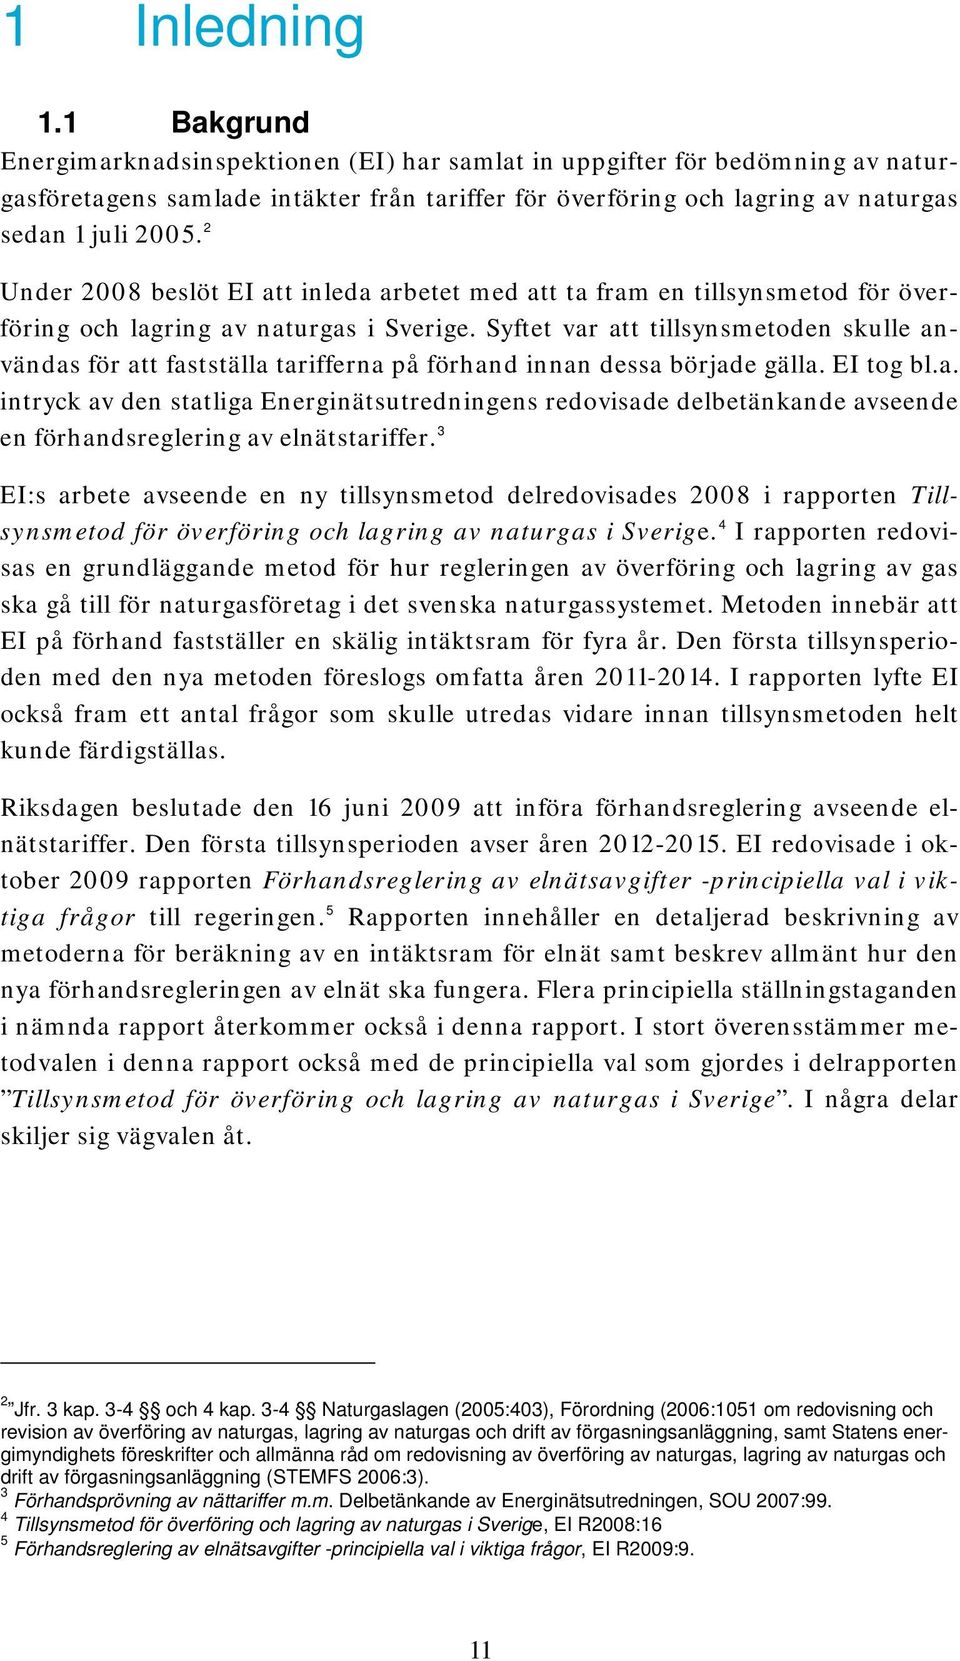 2 Under 2008 beslöt EI att inleda arbetet med att ta fram en tillsynsmetod för överföring och lagring av naturgas i Sverige.